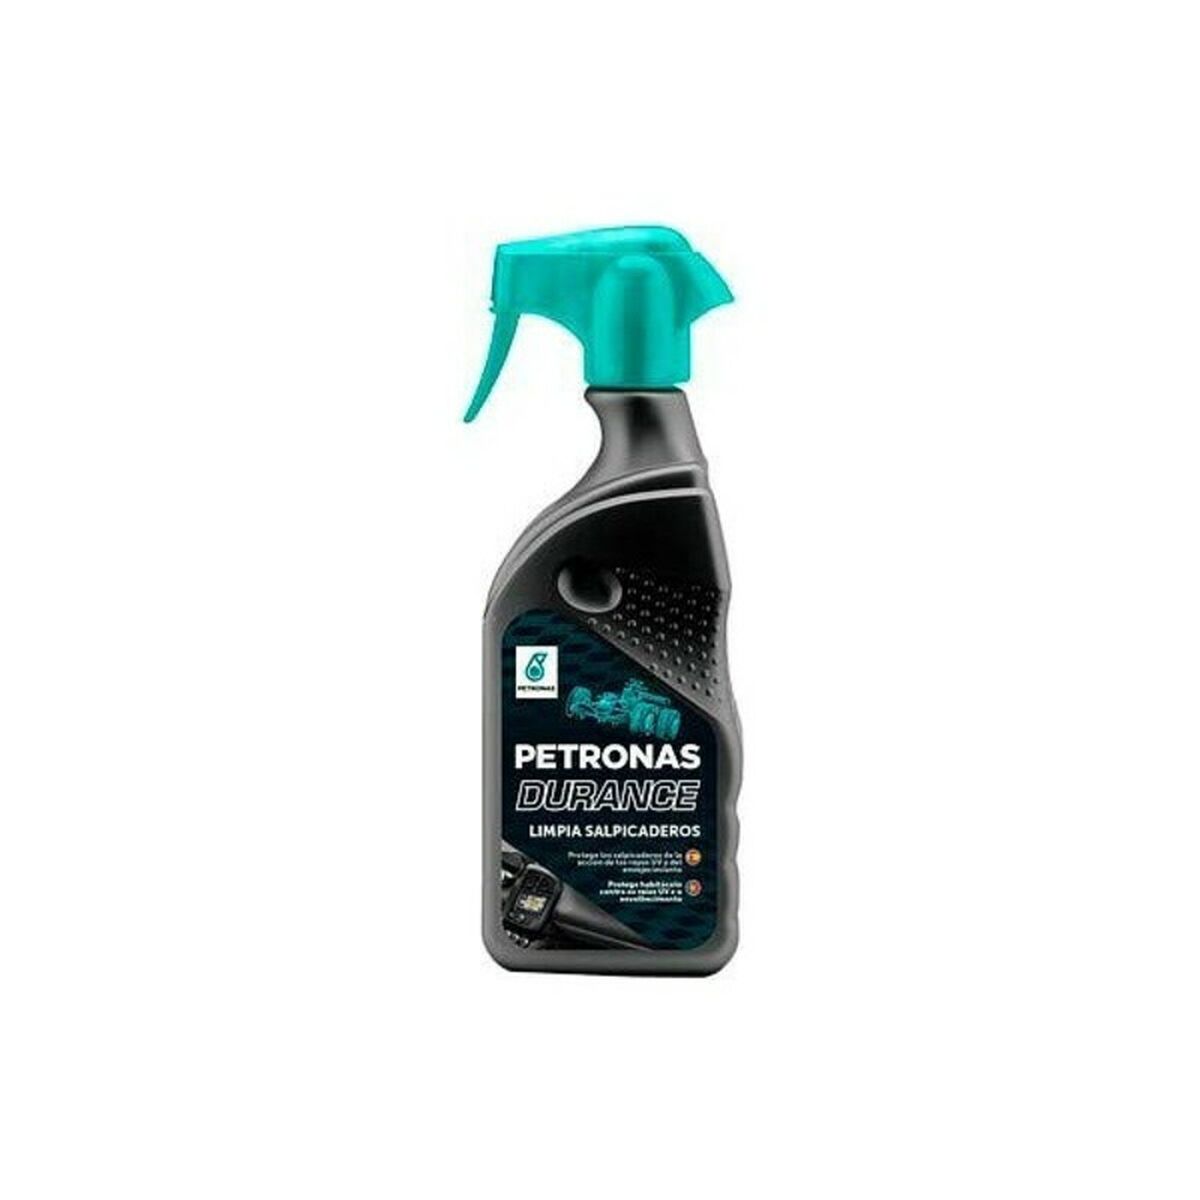 Osta tuote Kojelaudan puhdistusaine Petronas Durance 400 ml verkkokaupastamme Korhone: Urheilu & Vapaa-aika 20% alennuksella koodilla VIIKONLOPPU